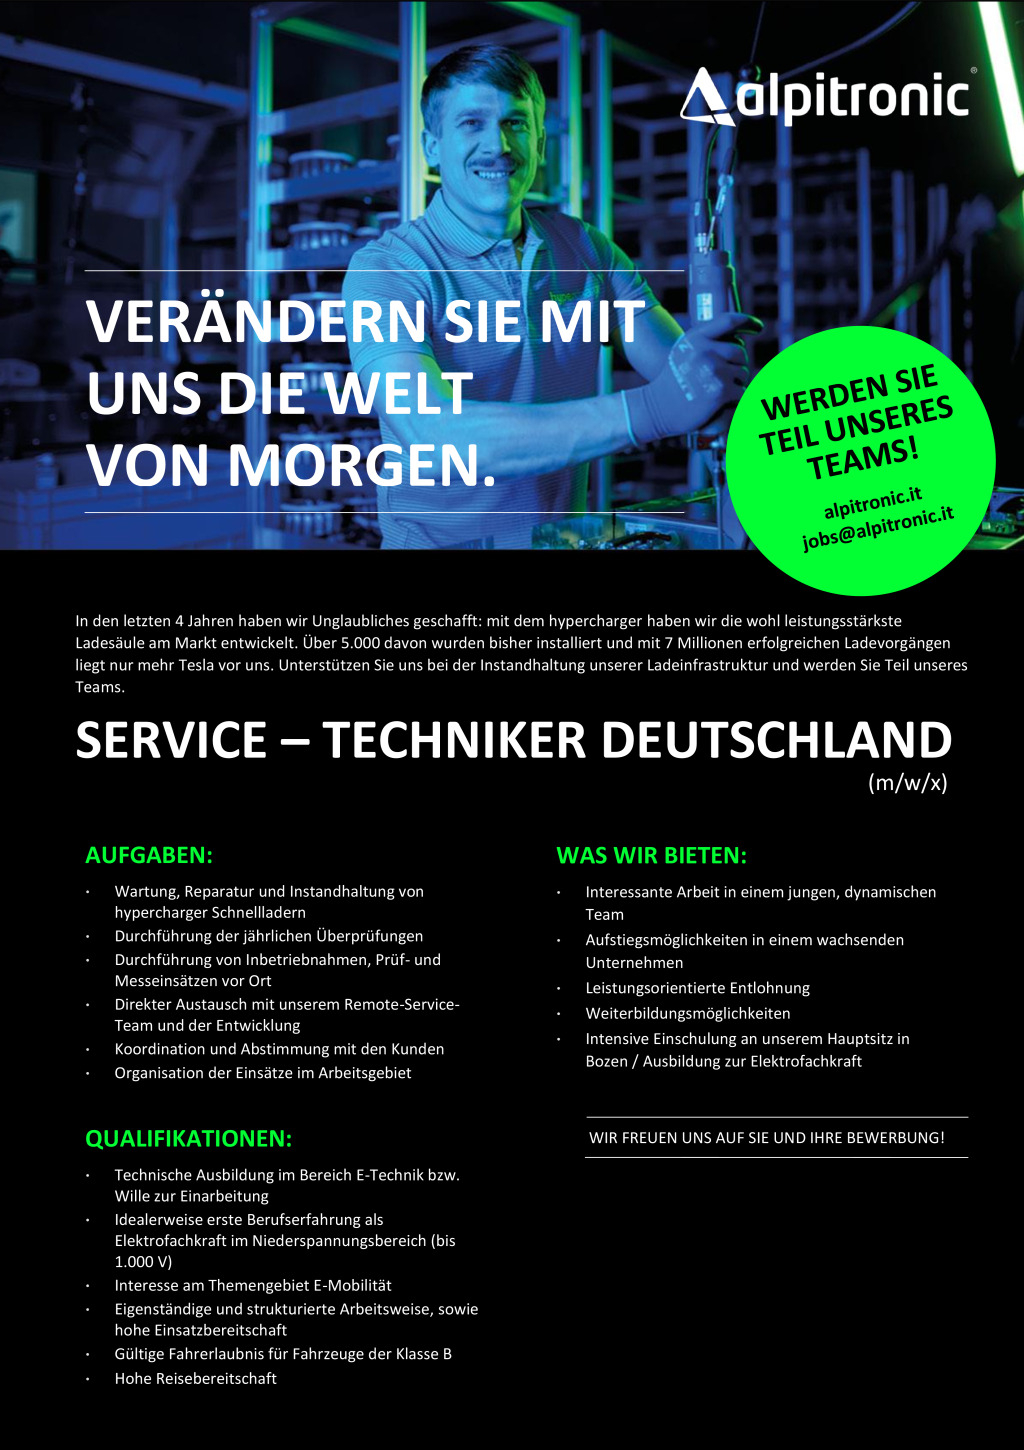 Service - Techniker Deutschland (m/w/x)